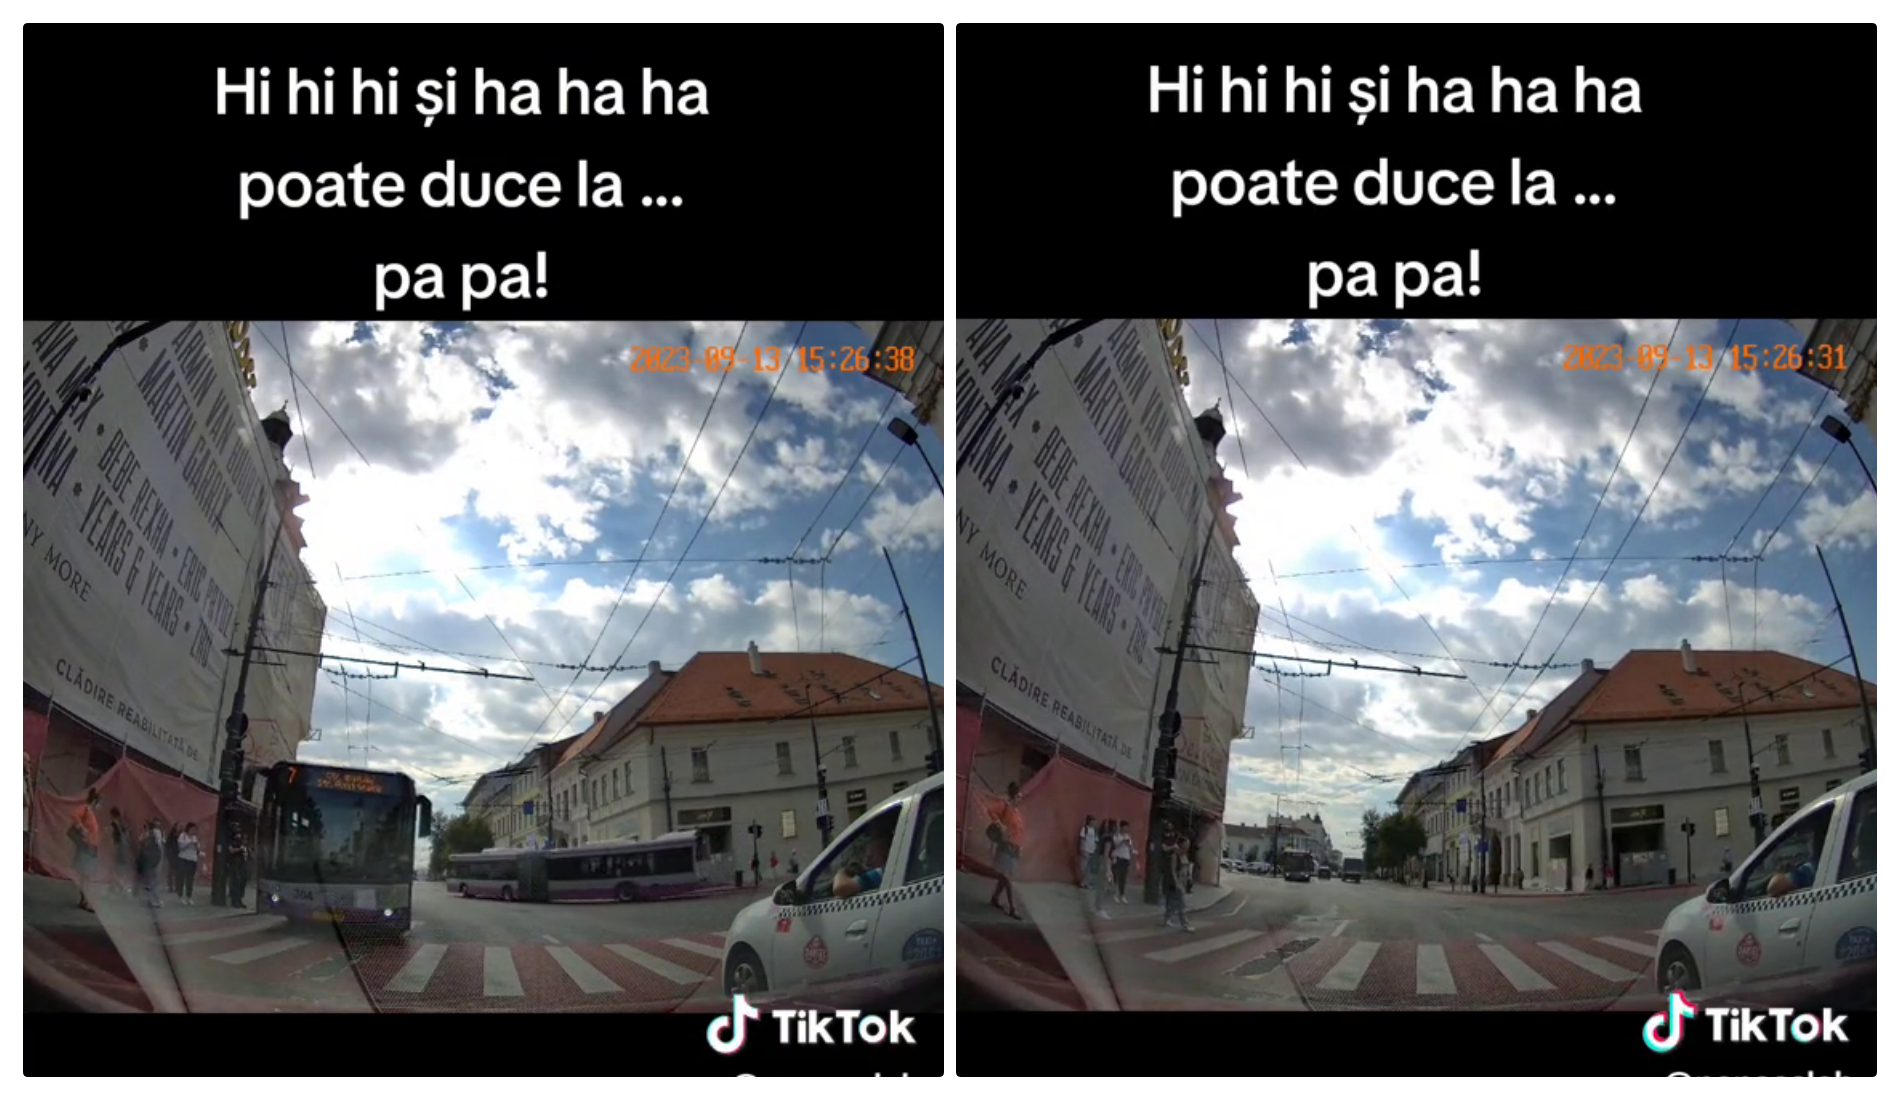 Două fete au fost la un pas să fie lovite de un troleibuz în centrul Clujului: ”Hi, hi, hi și ha, ha, ha, pot duce la ... pa, pa!” - VIDEO